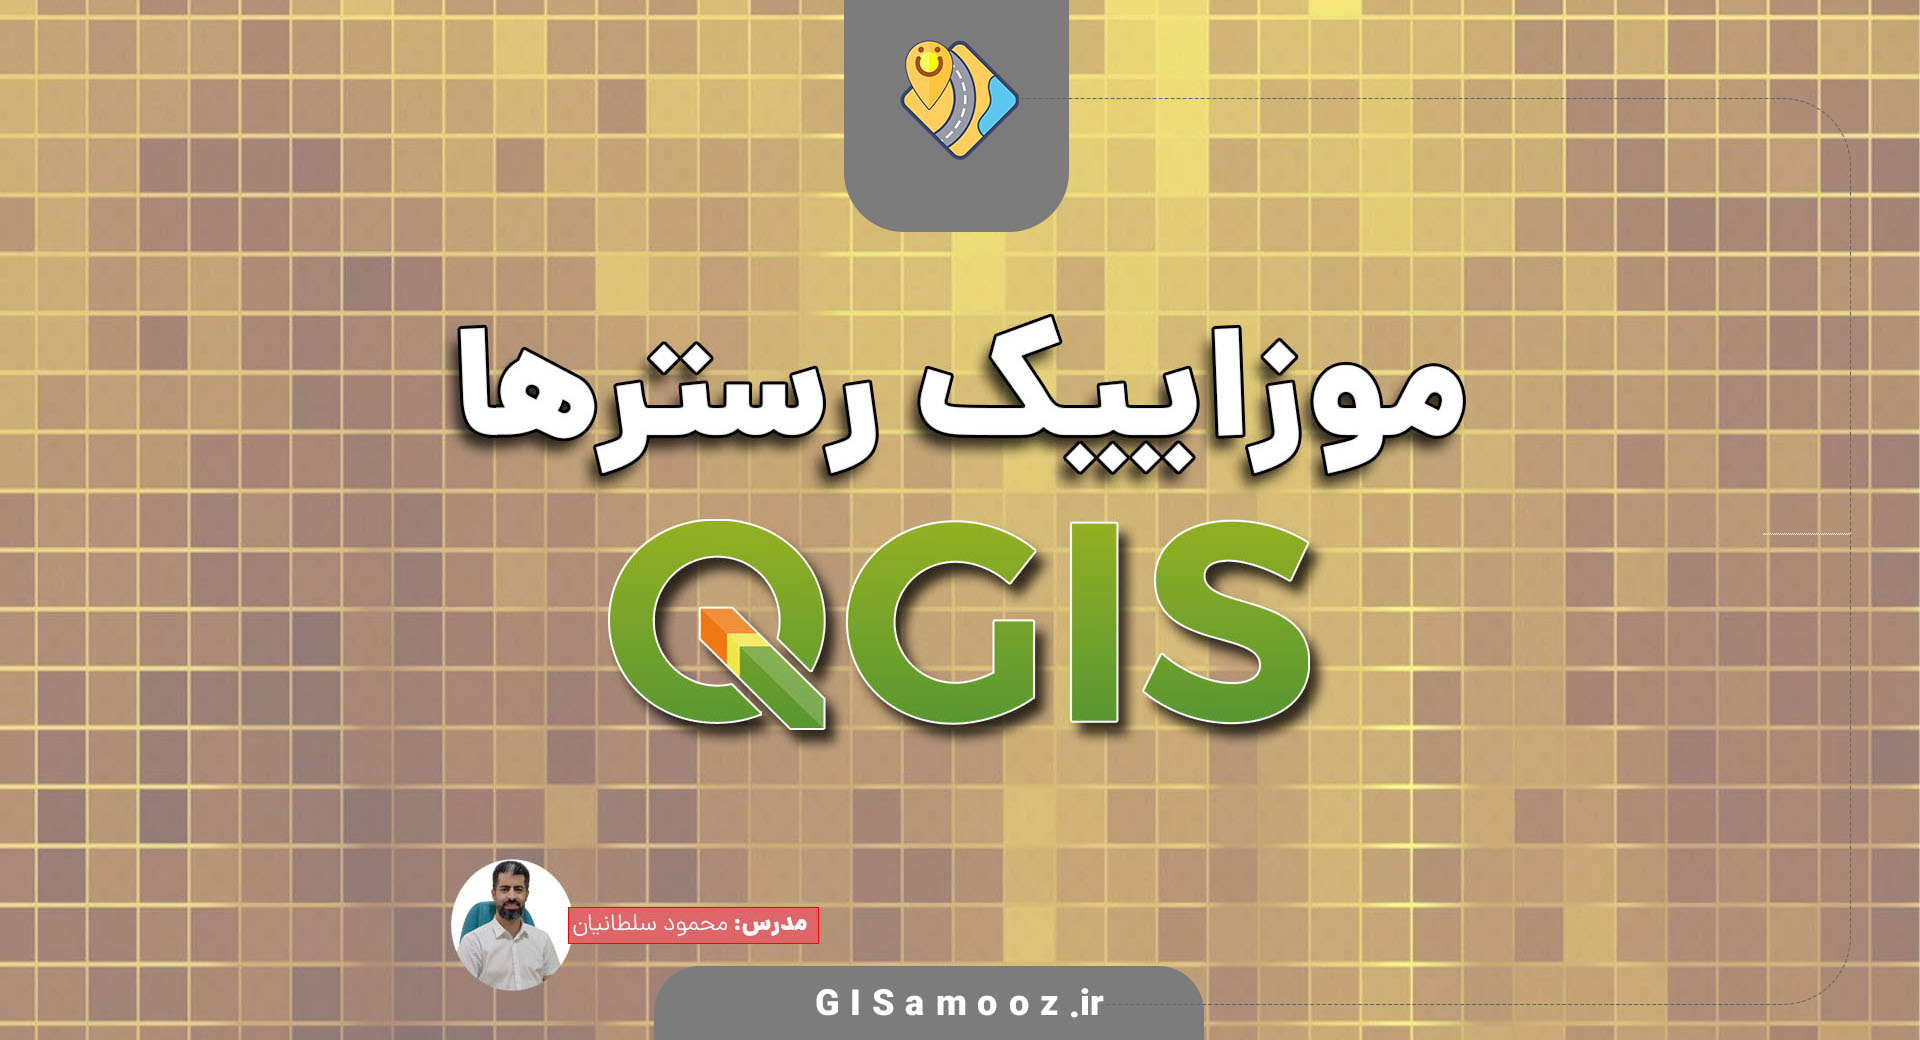 موزاییک فایلهای رستری در QGIS